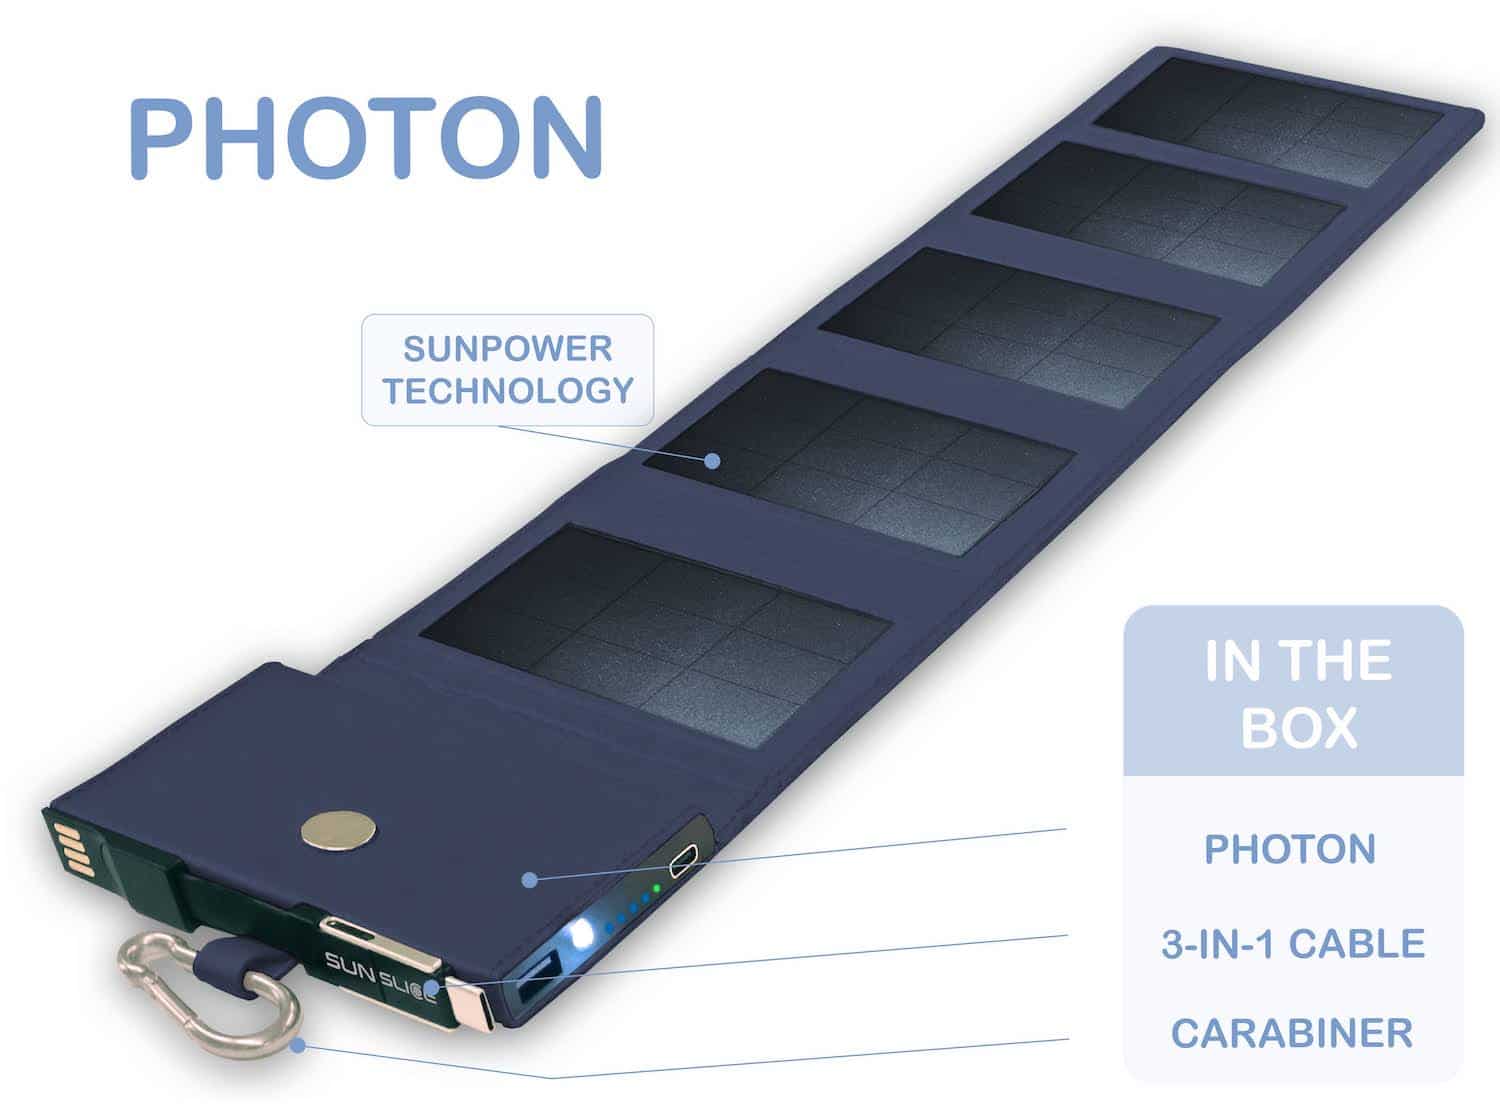 photon blaues solar power bank Ladegerät auf weißem Hintergrund mit Angaben